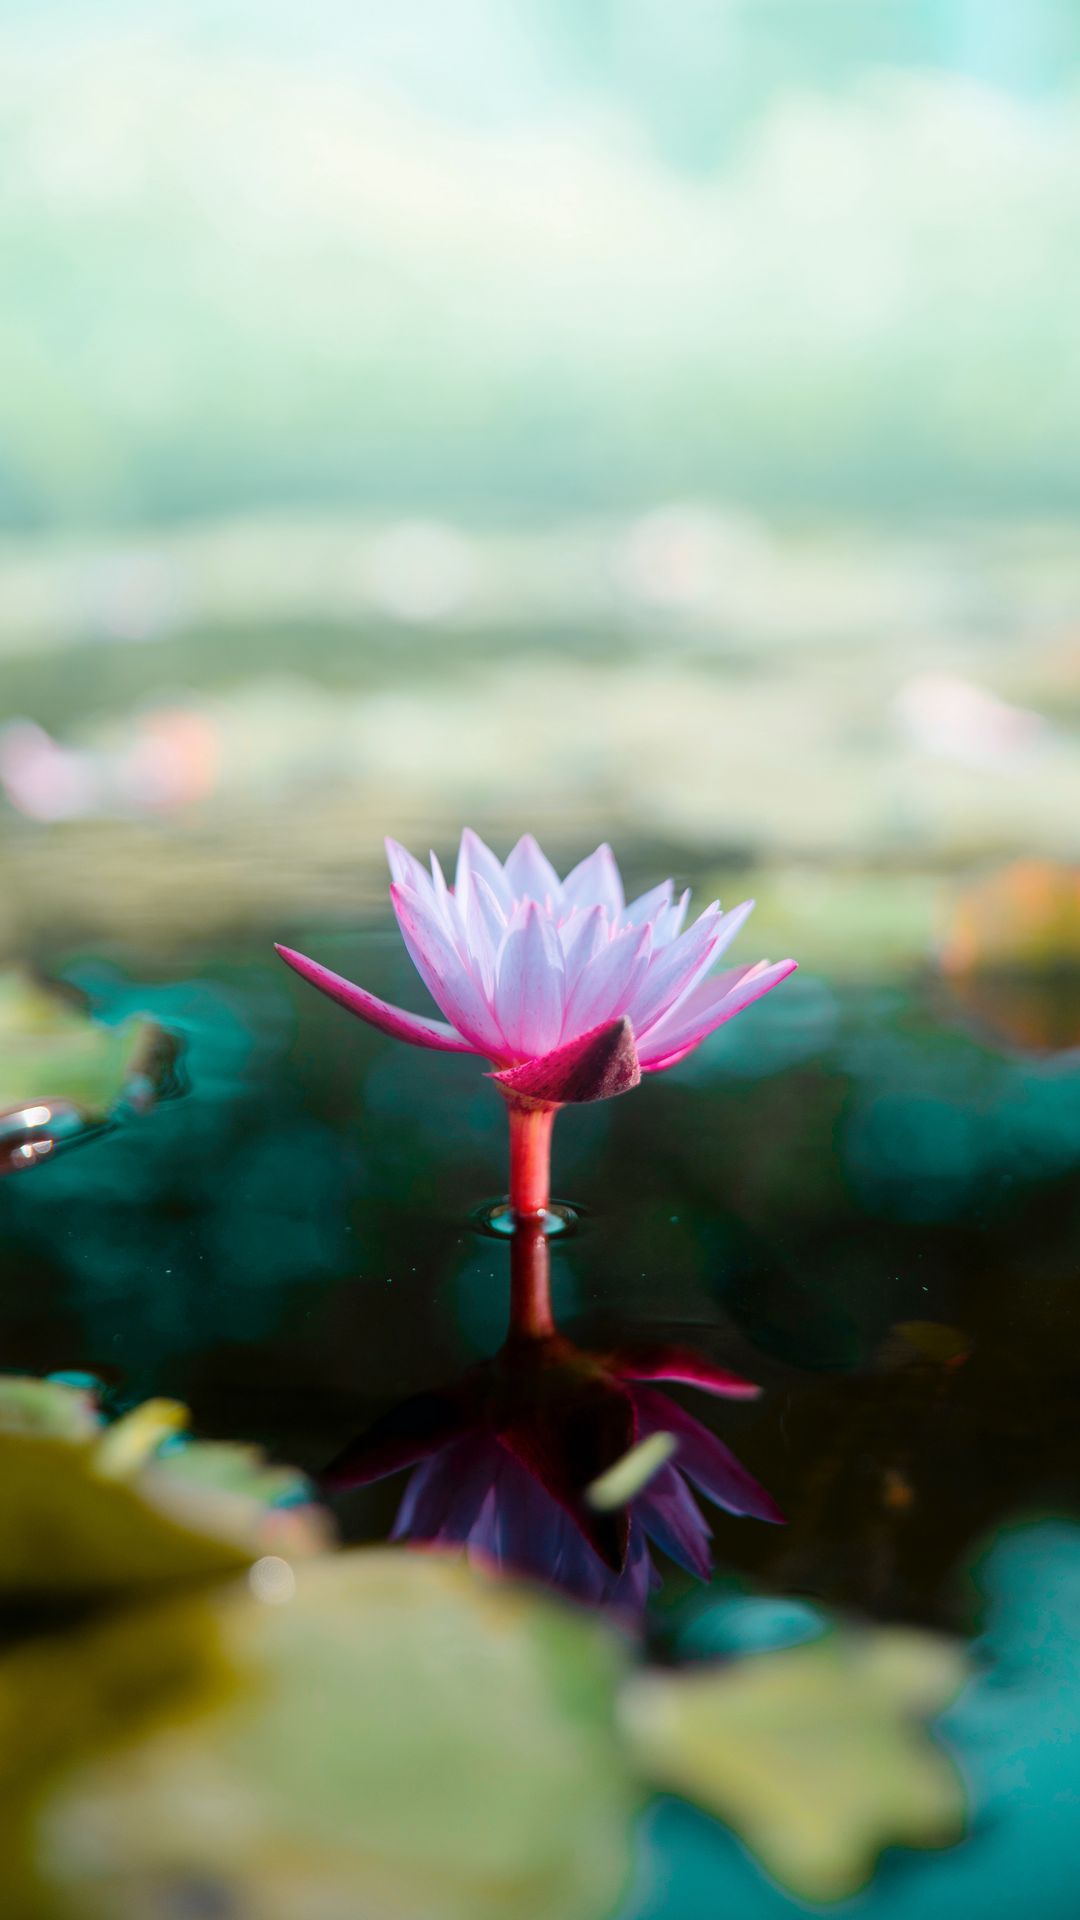 Download wallpaper 1080x1920 lotus, flower, water, pink, blur samsung